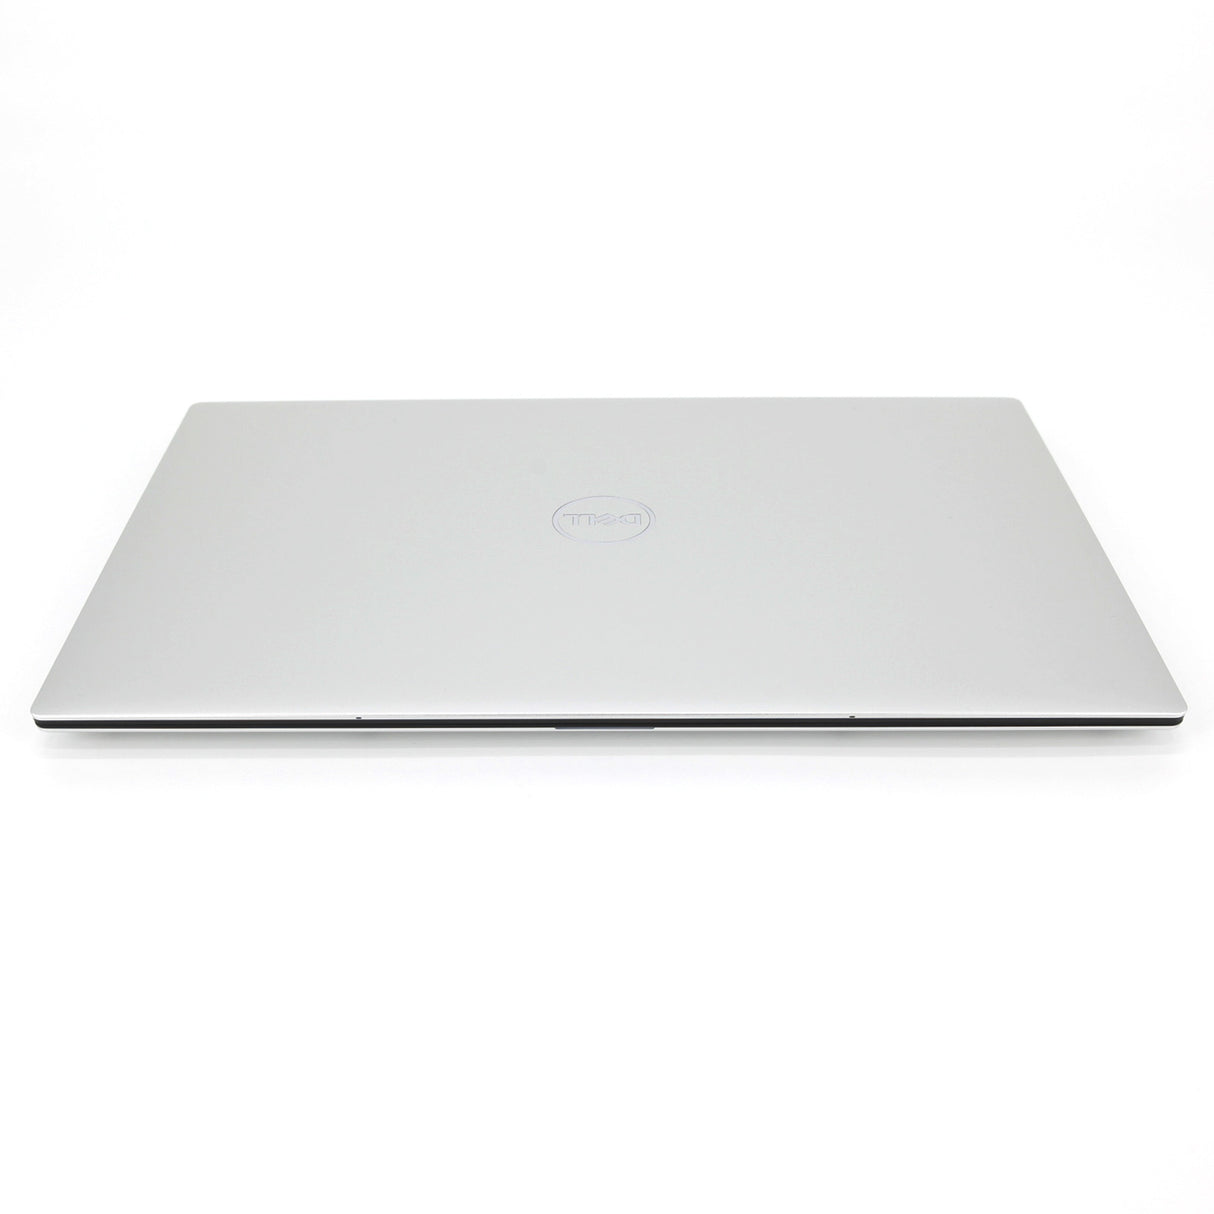 Dell XPS 13 9310 13.4" Laptop: 11th Gen Core i5, 8GB RAM, 256GB SSD Warranty VAT - GreenGreen Store